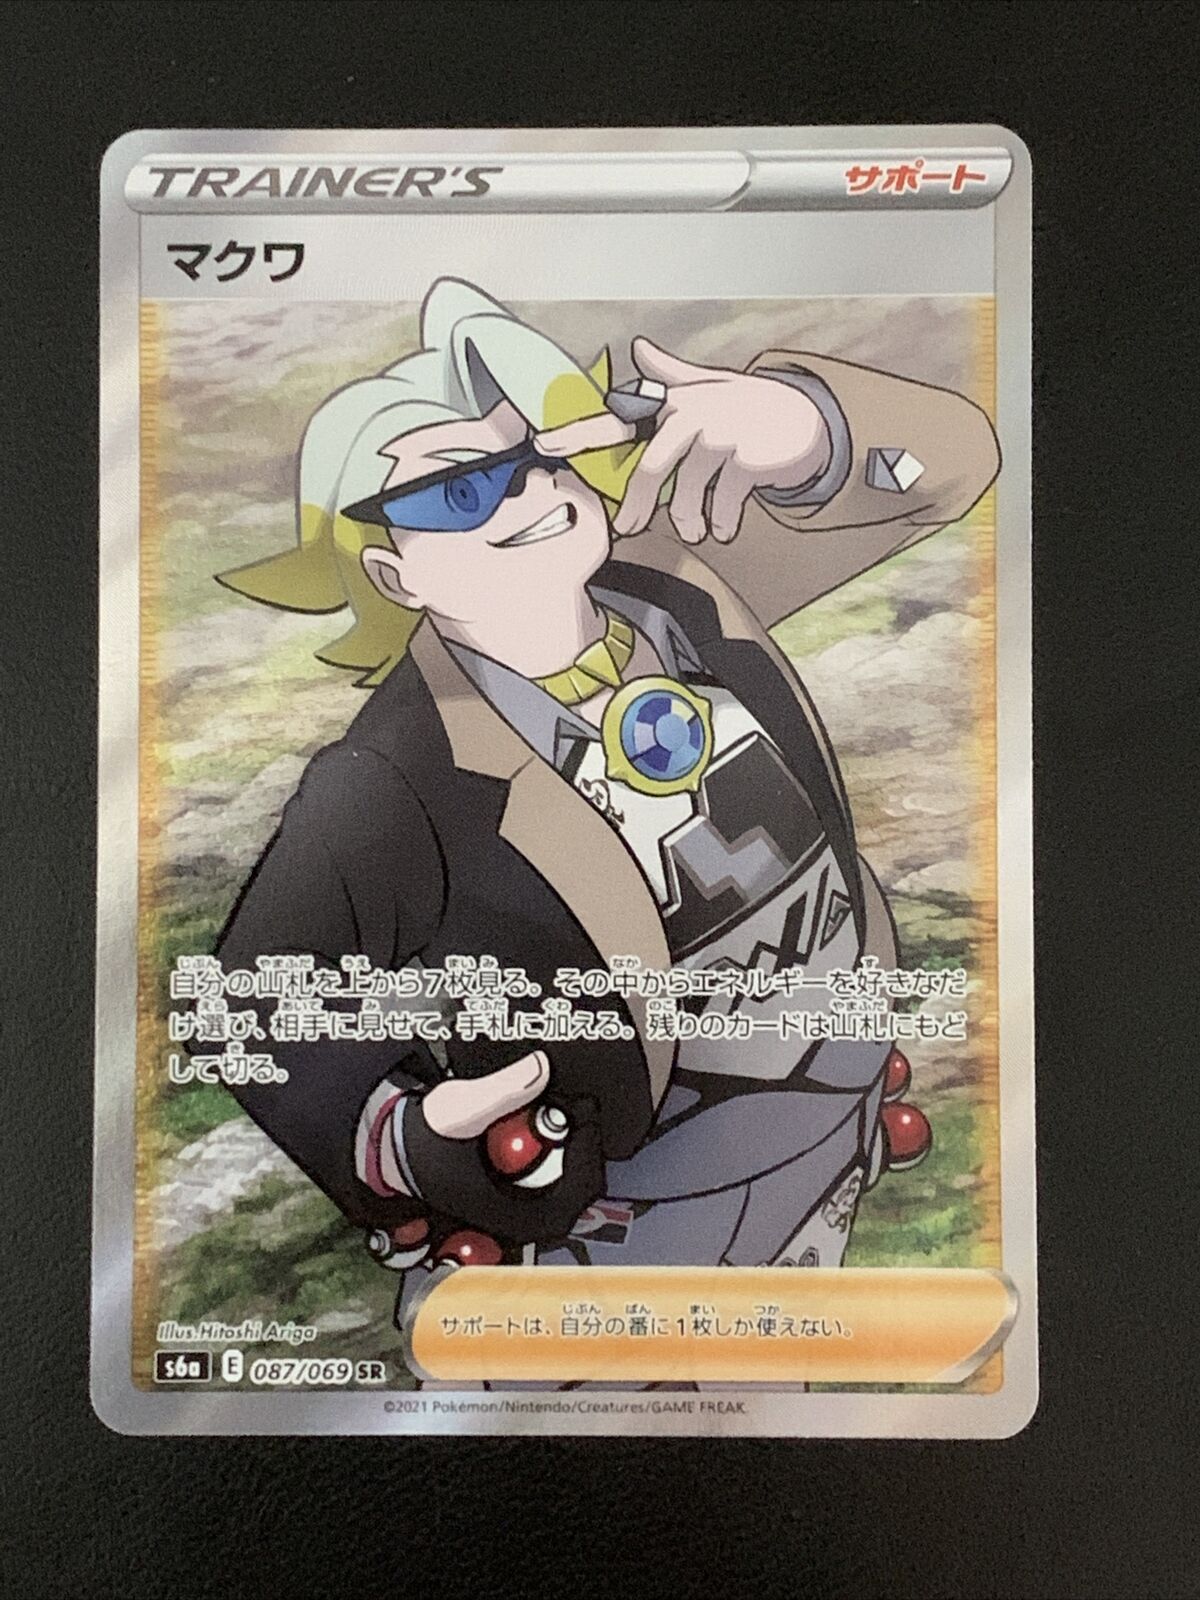 Gordie HR 097/069 S6a Pokemon Card Japanese Eevee Heroes HOLO MINT 